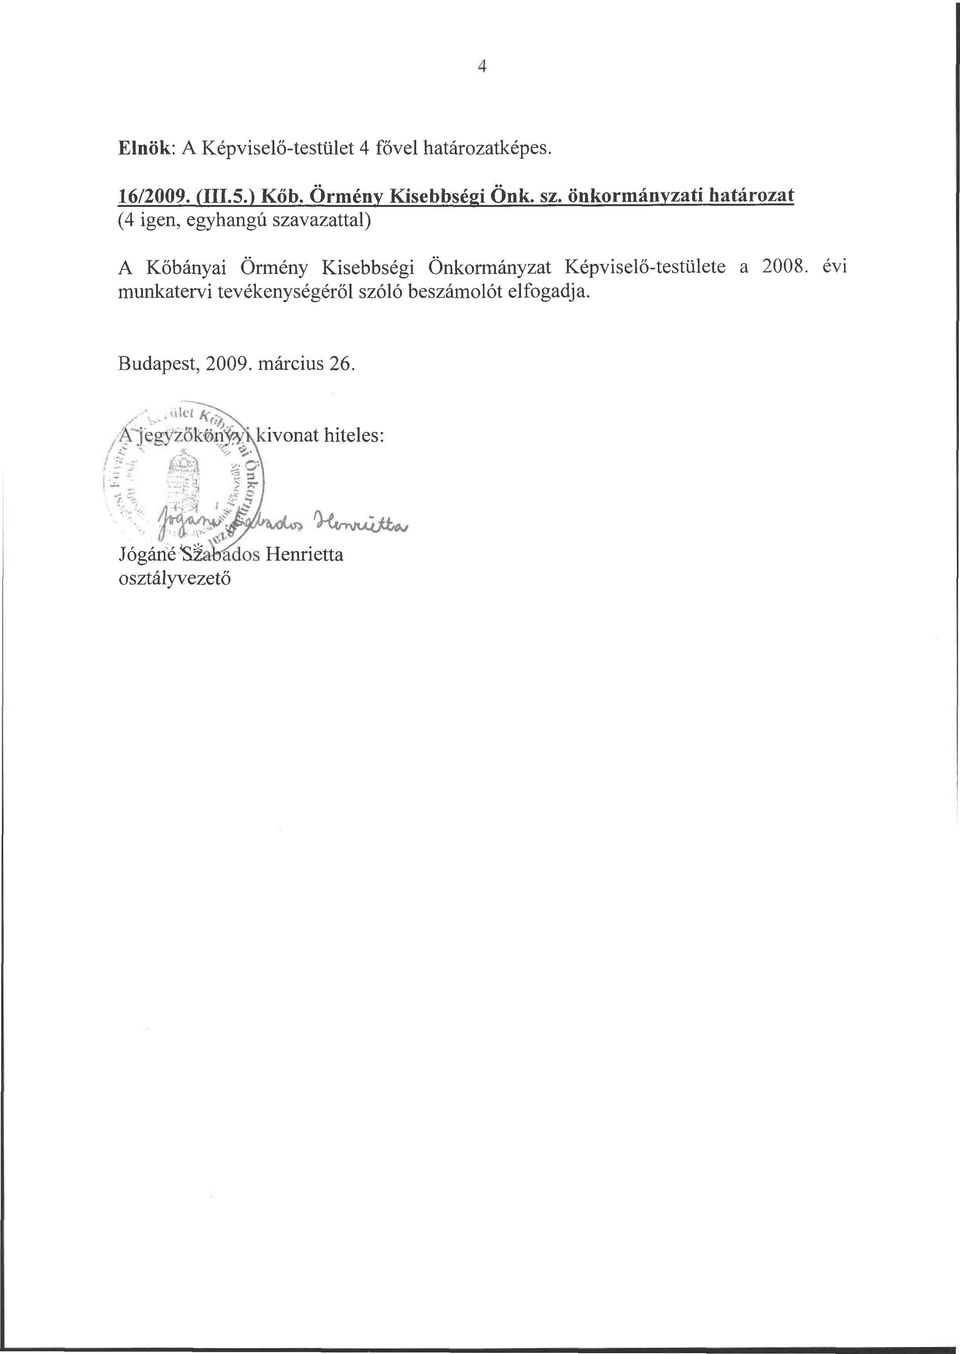 Képviselő-testülete a 2008. évi munkatervi tevékenységéről szóló beszámolót elfogadja. Budapest, 2009.